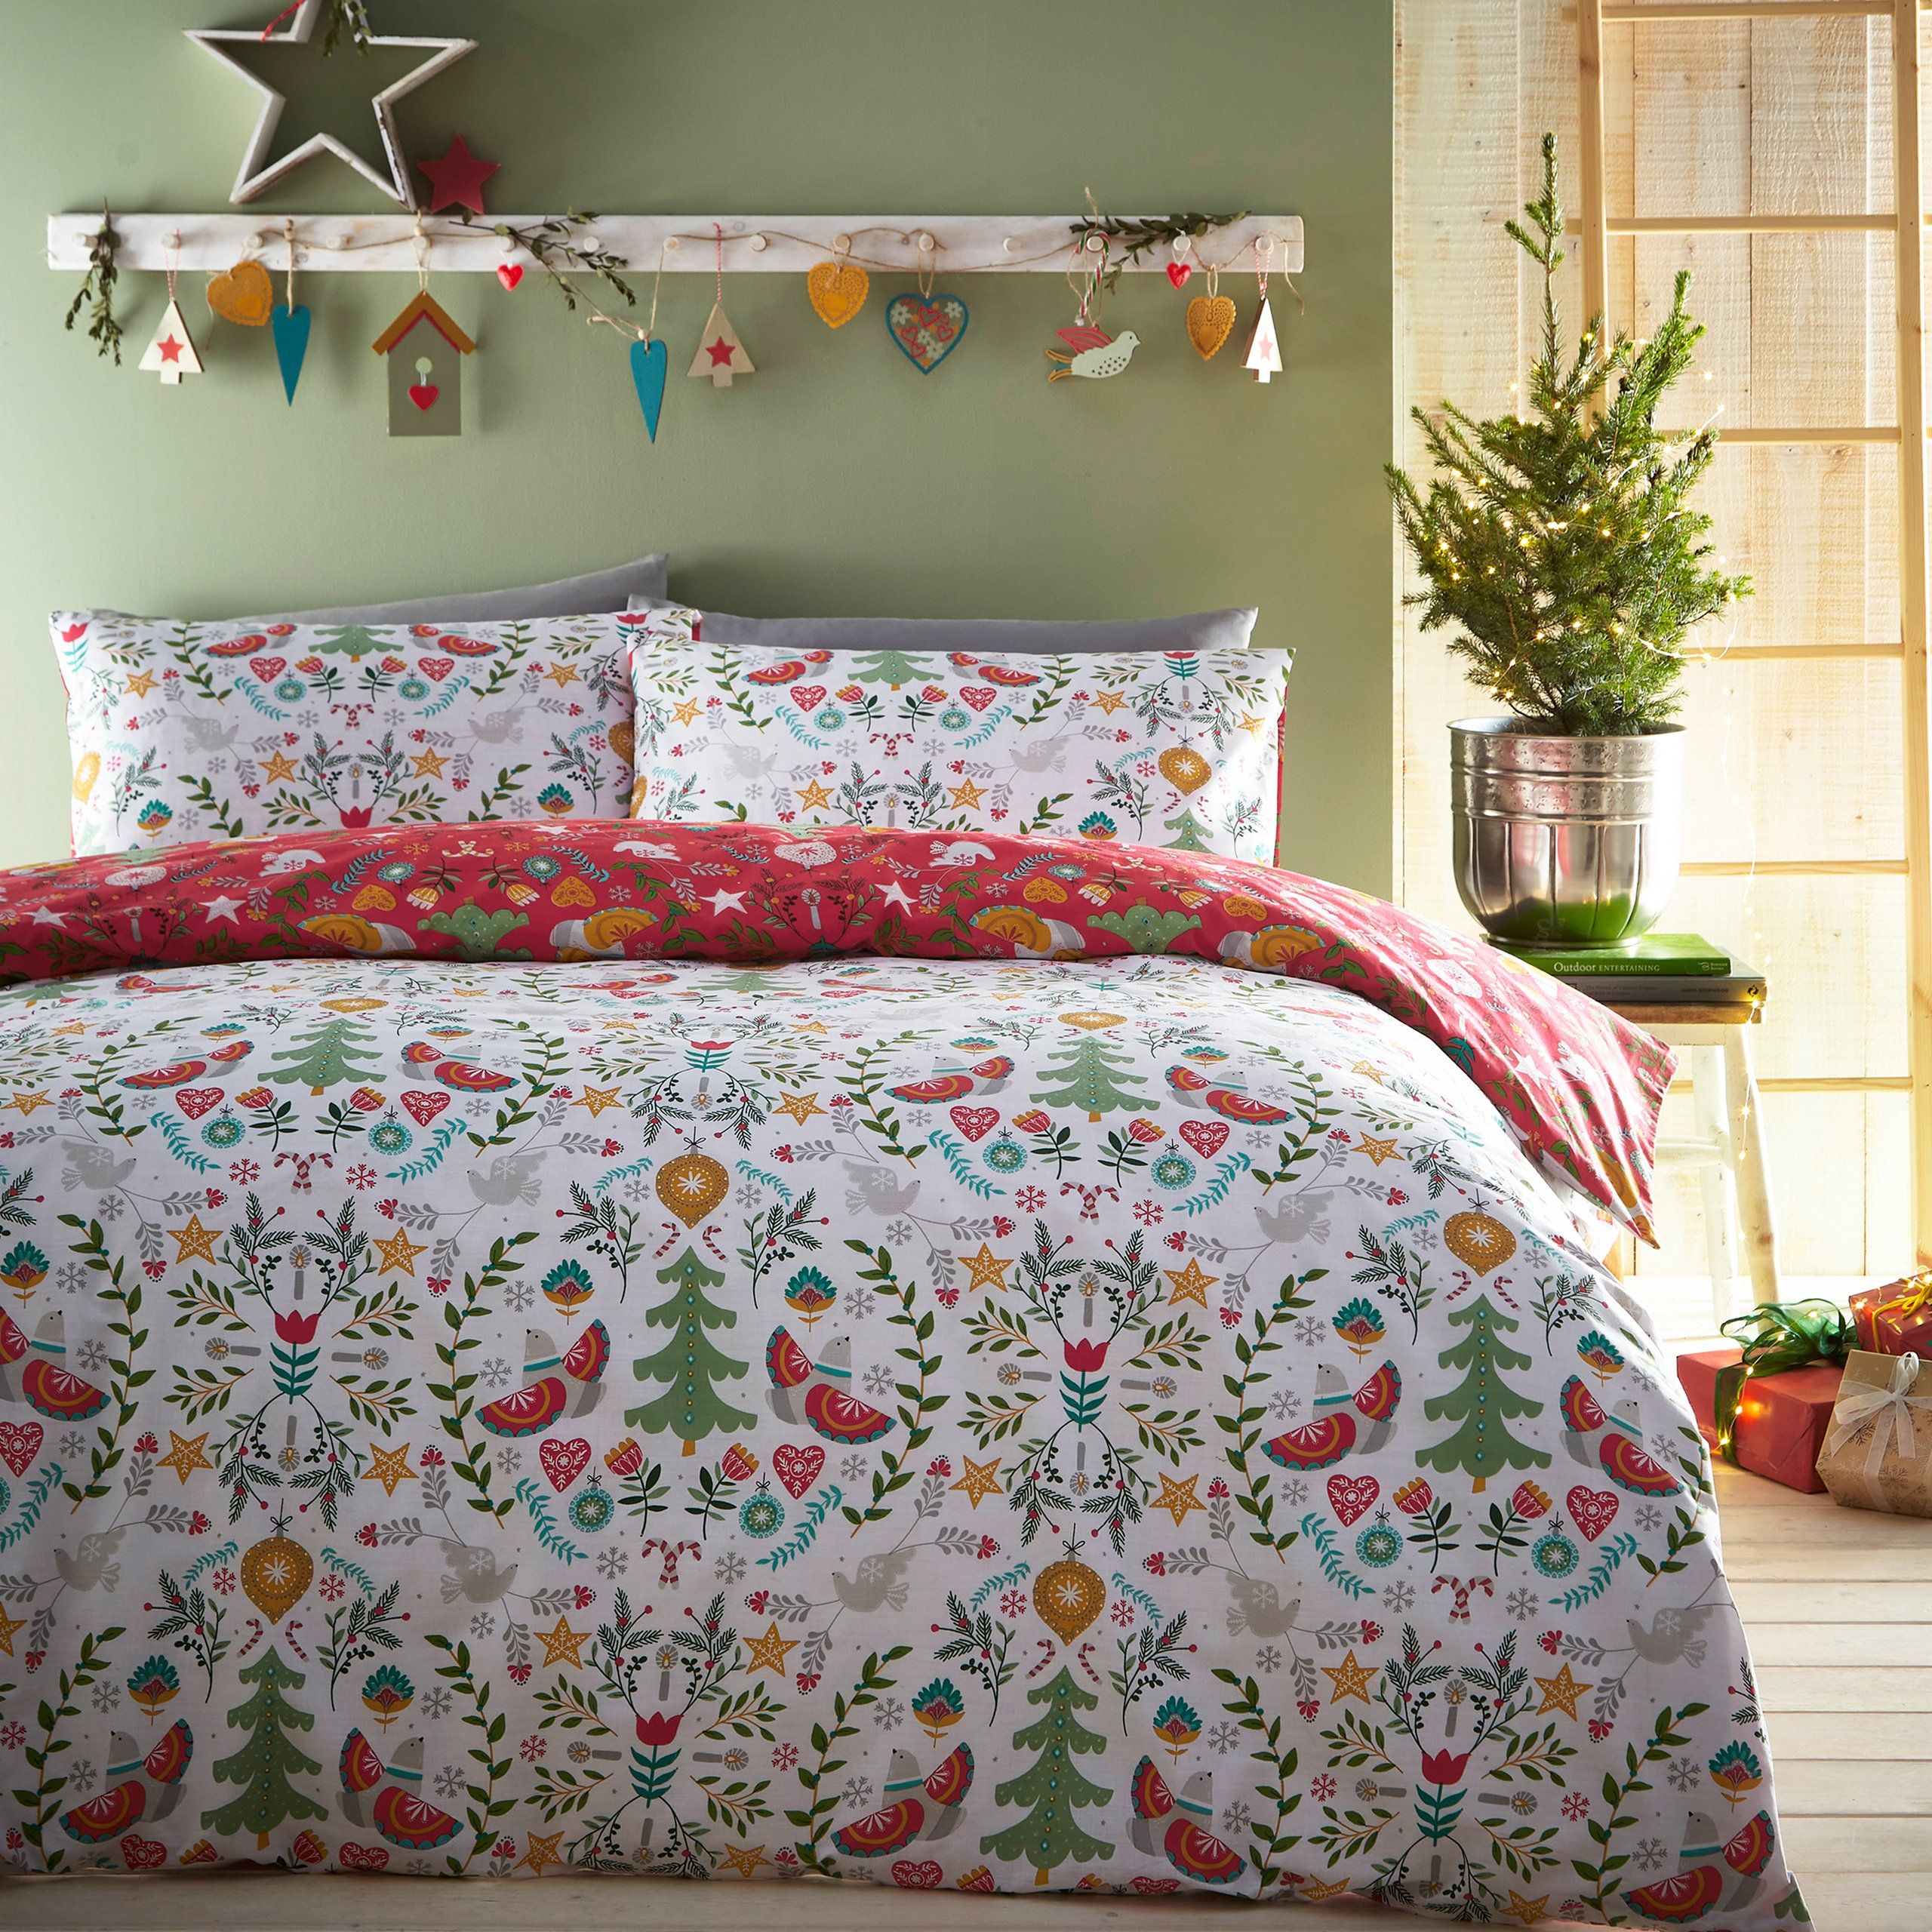 Pom Pom Festive Gonk Christmas Duvet Quilt Cover Bedding Set Pillowcases 